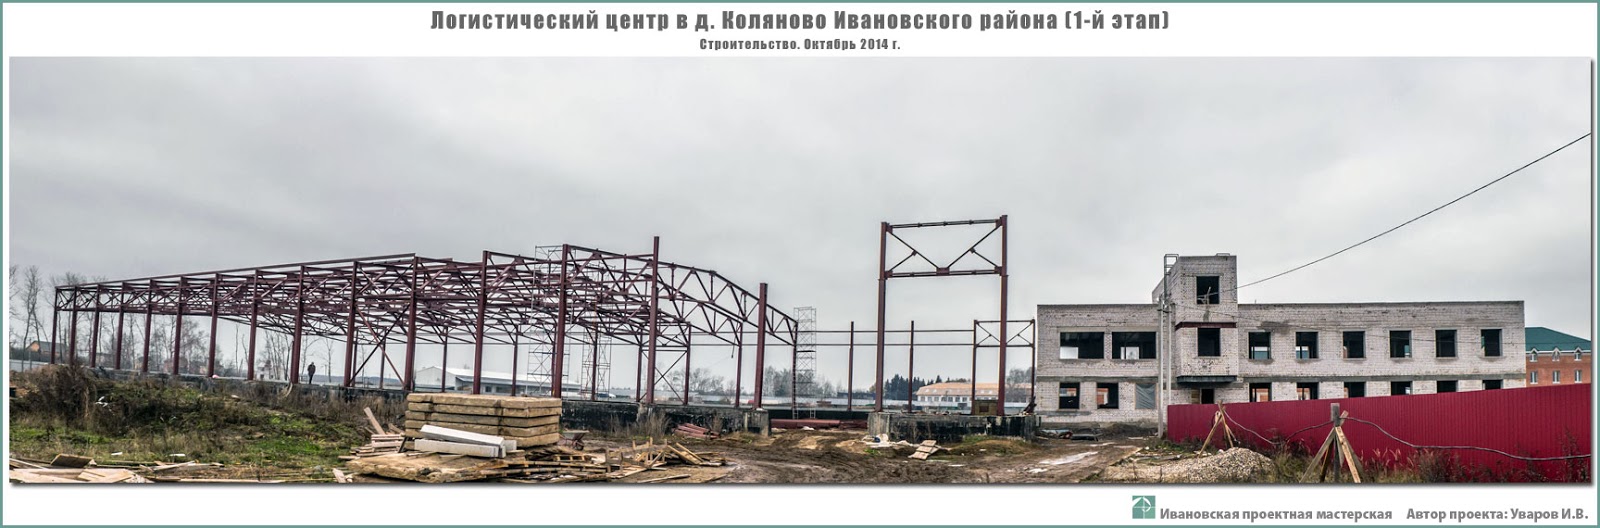 Строительство логистического центра в пригороде г. Иваново - д. Коляново Ивановского р-на